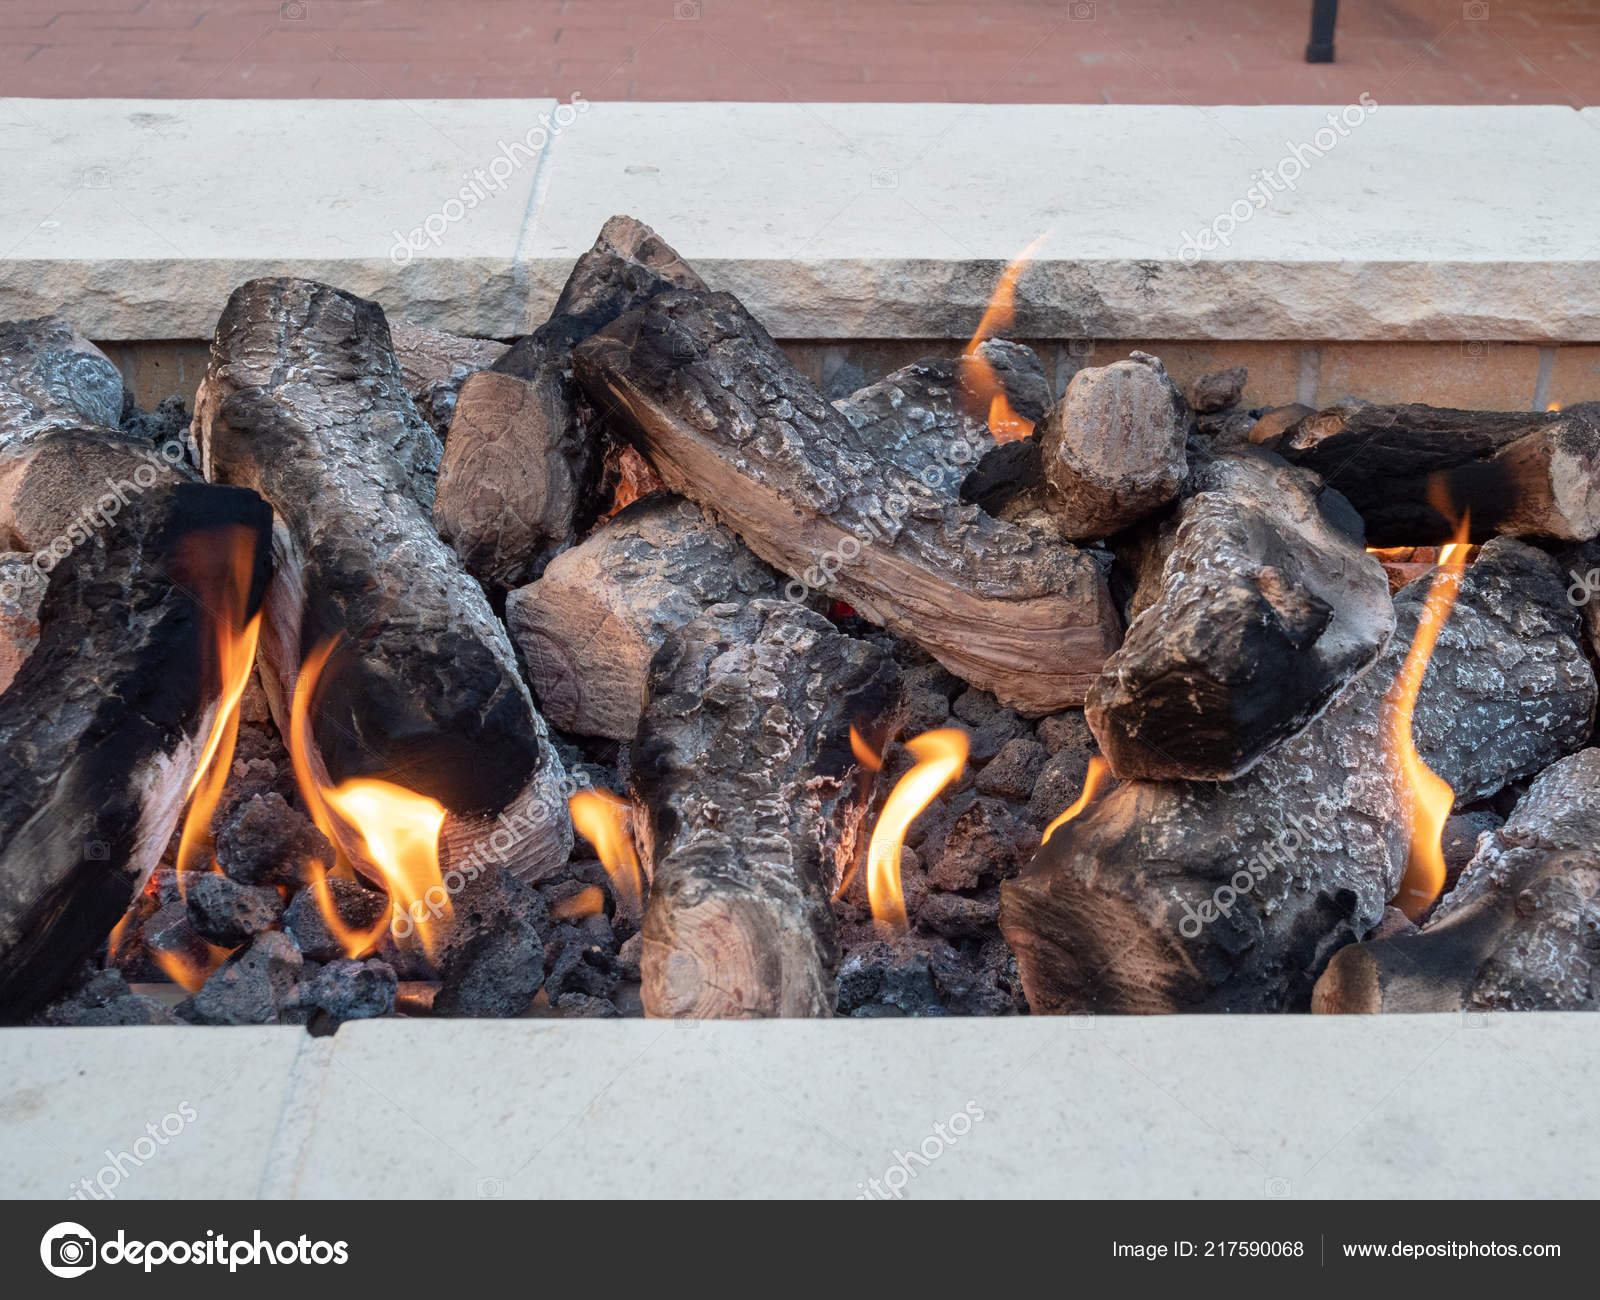 Logs Sitting In Open Fire A White, Open Fire Pit